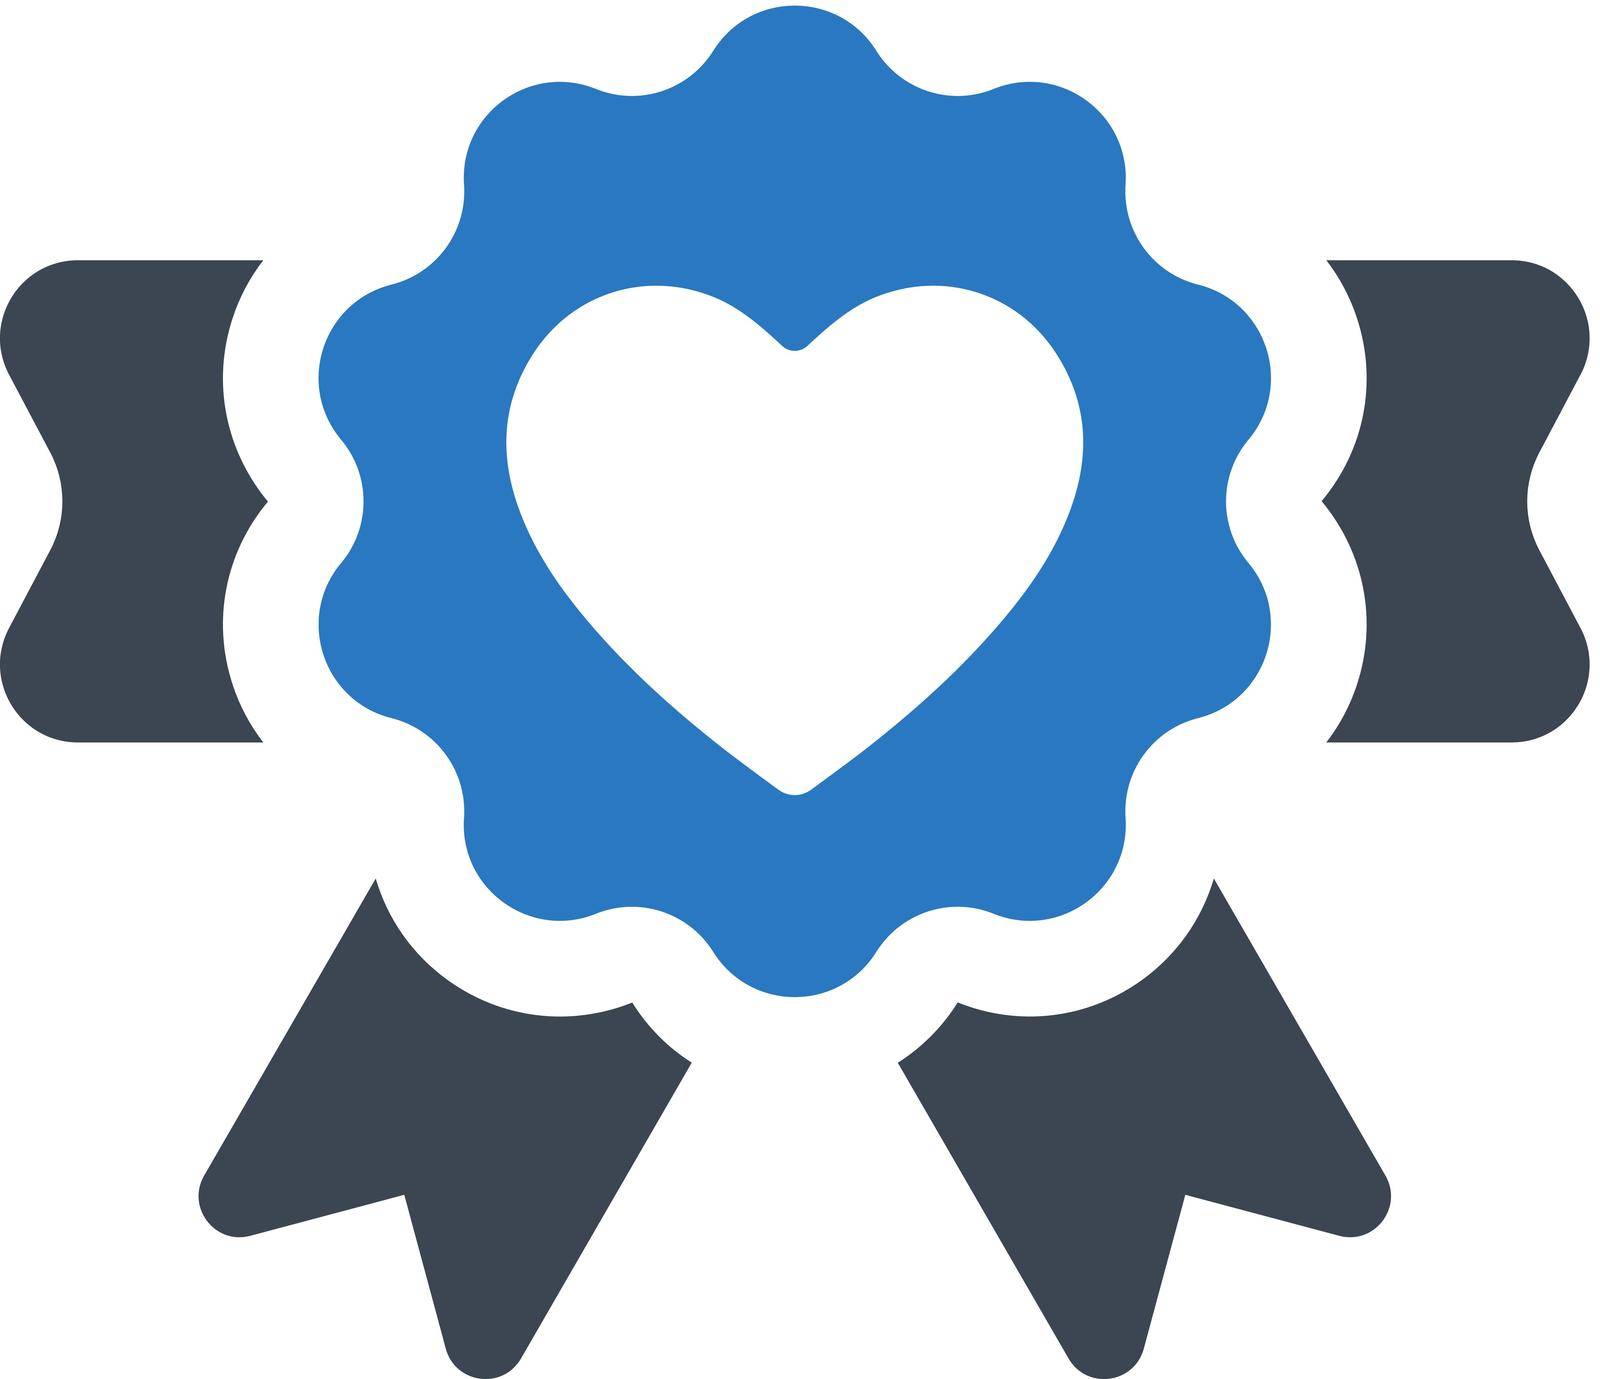 Love award icon. Vector EPS file.